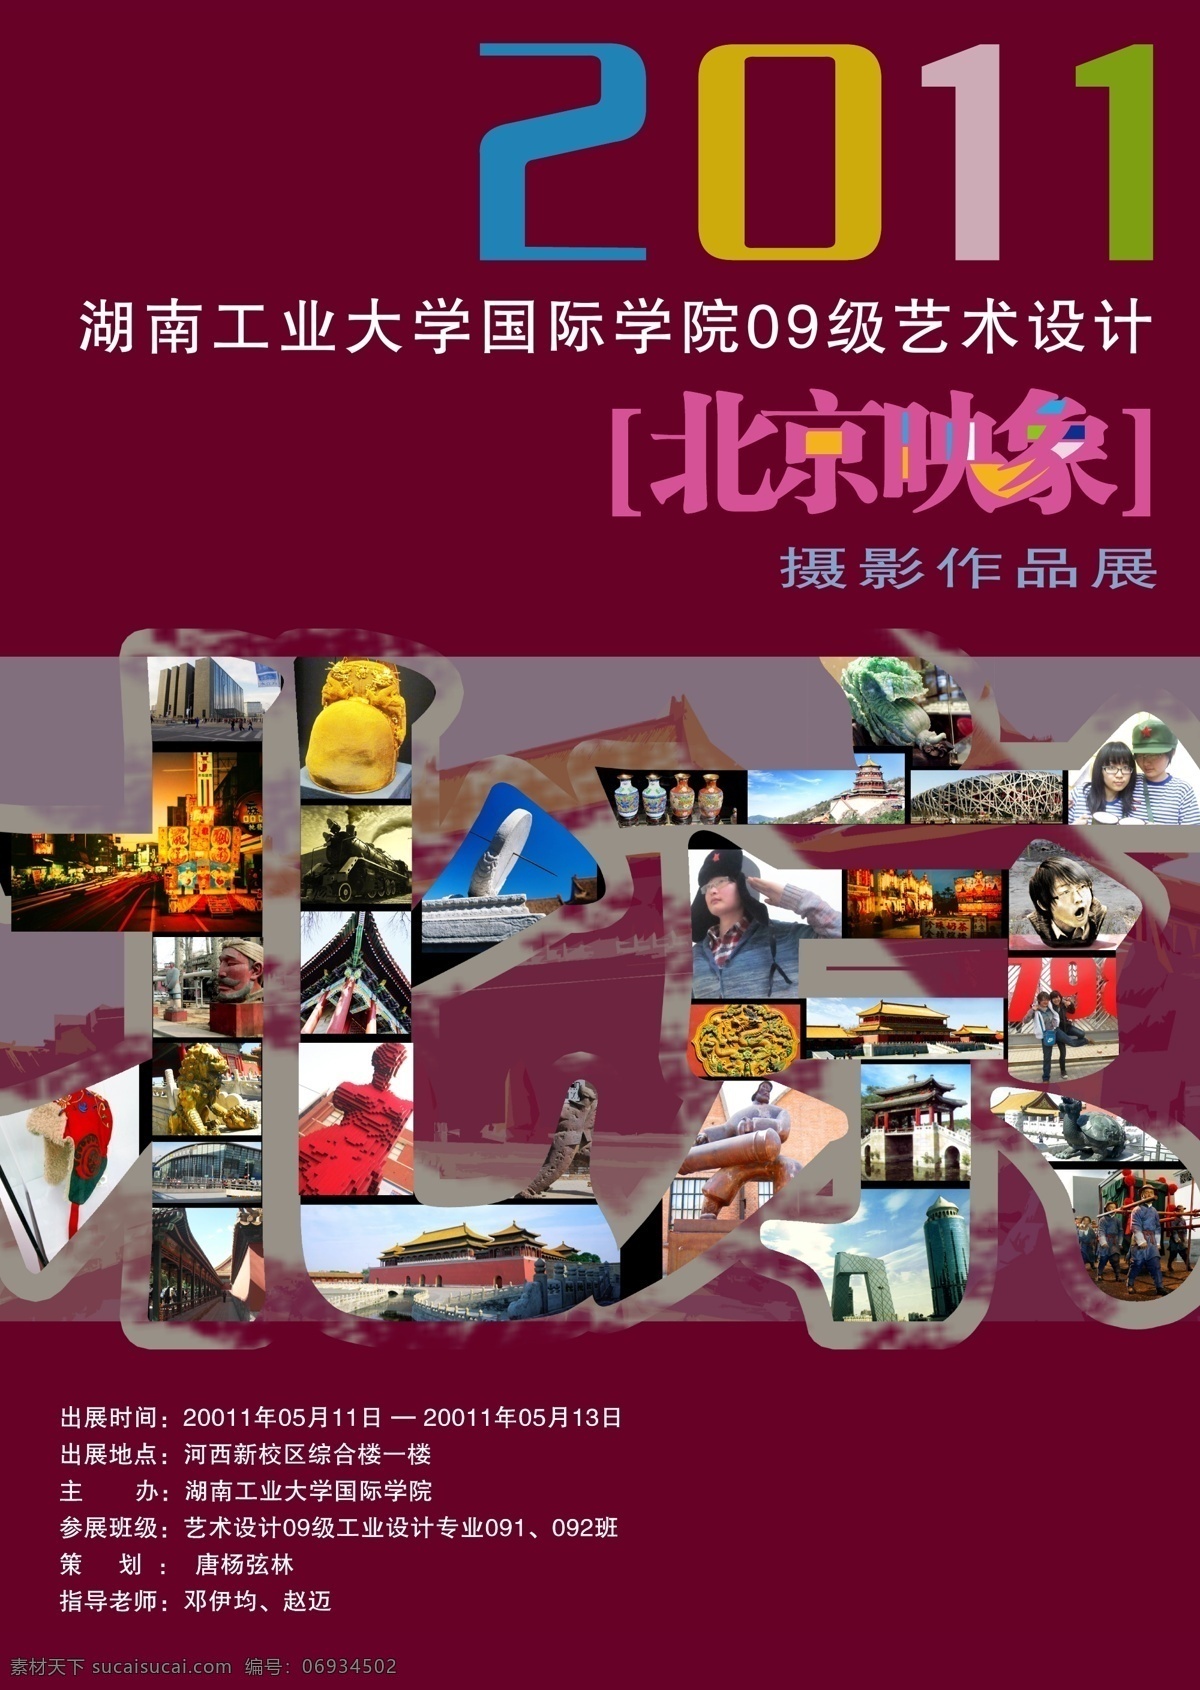 北京 考察 摄影展 平面设计 展板模板 展板设计 招贴设计 北京考察 矢量 其他海报设计